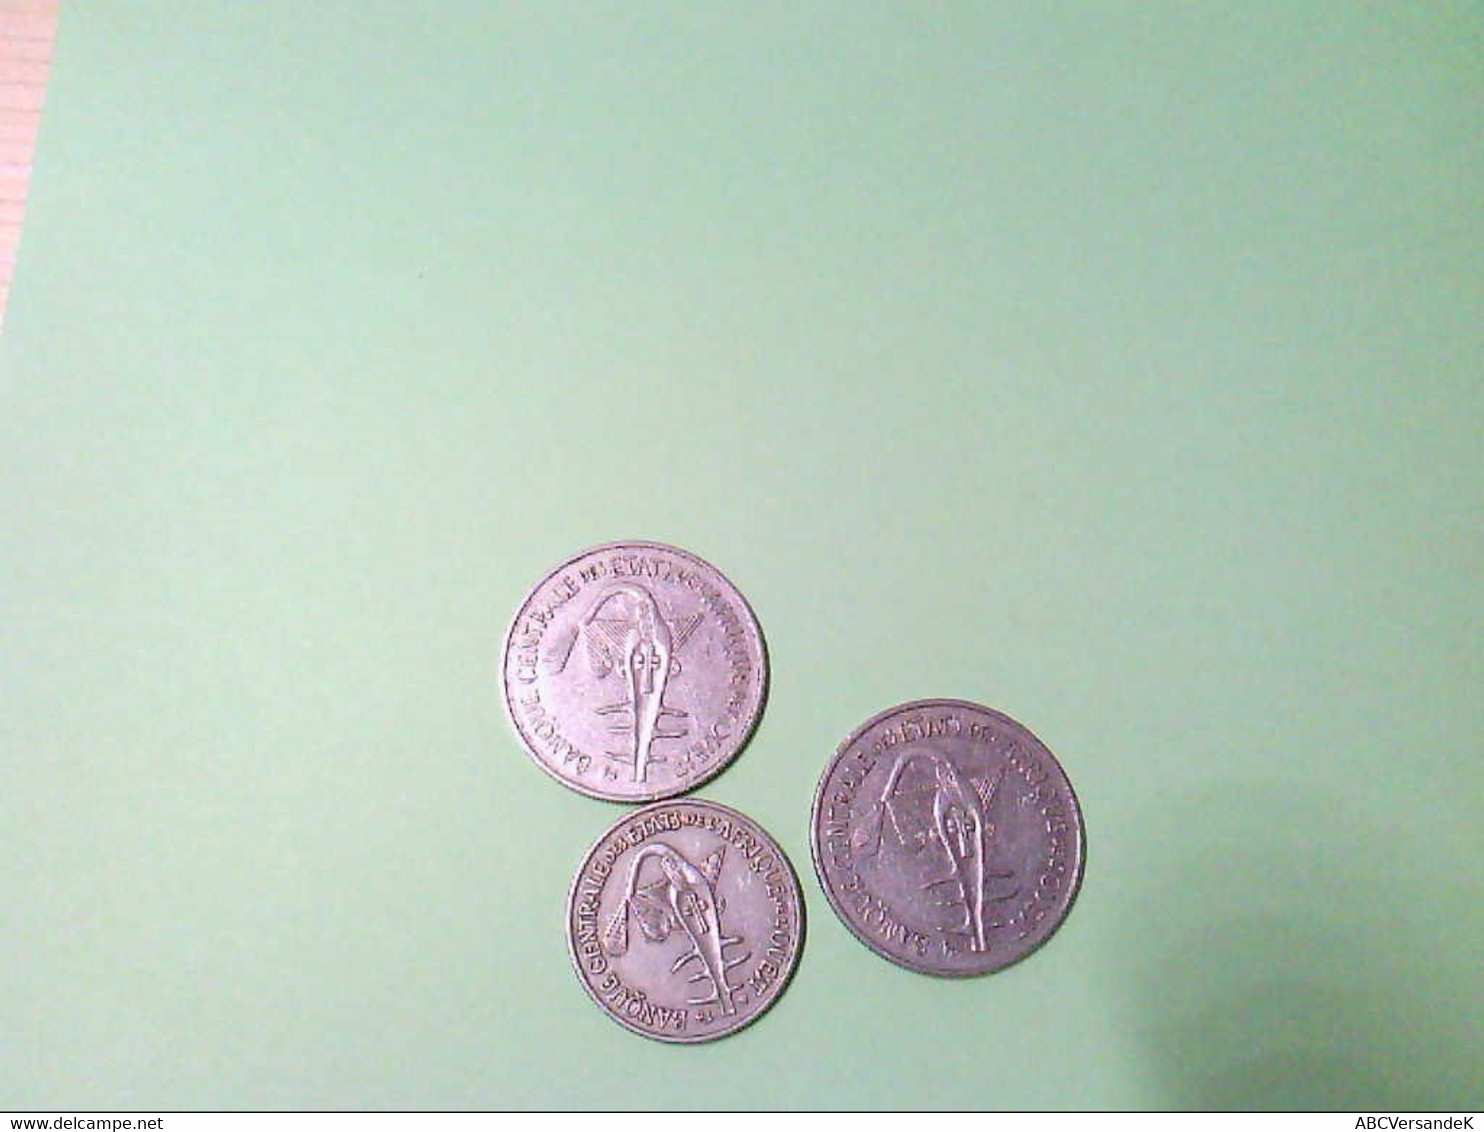 Ost Afrika, 3 Münzen, 2 X 100 Francj, 1 X 50 Francj, Erhaltungszustand: Schön. - Numismática